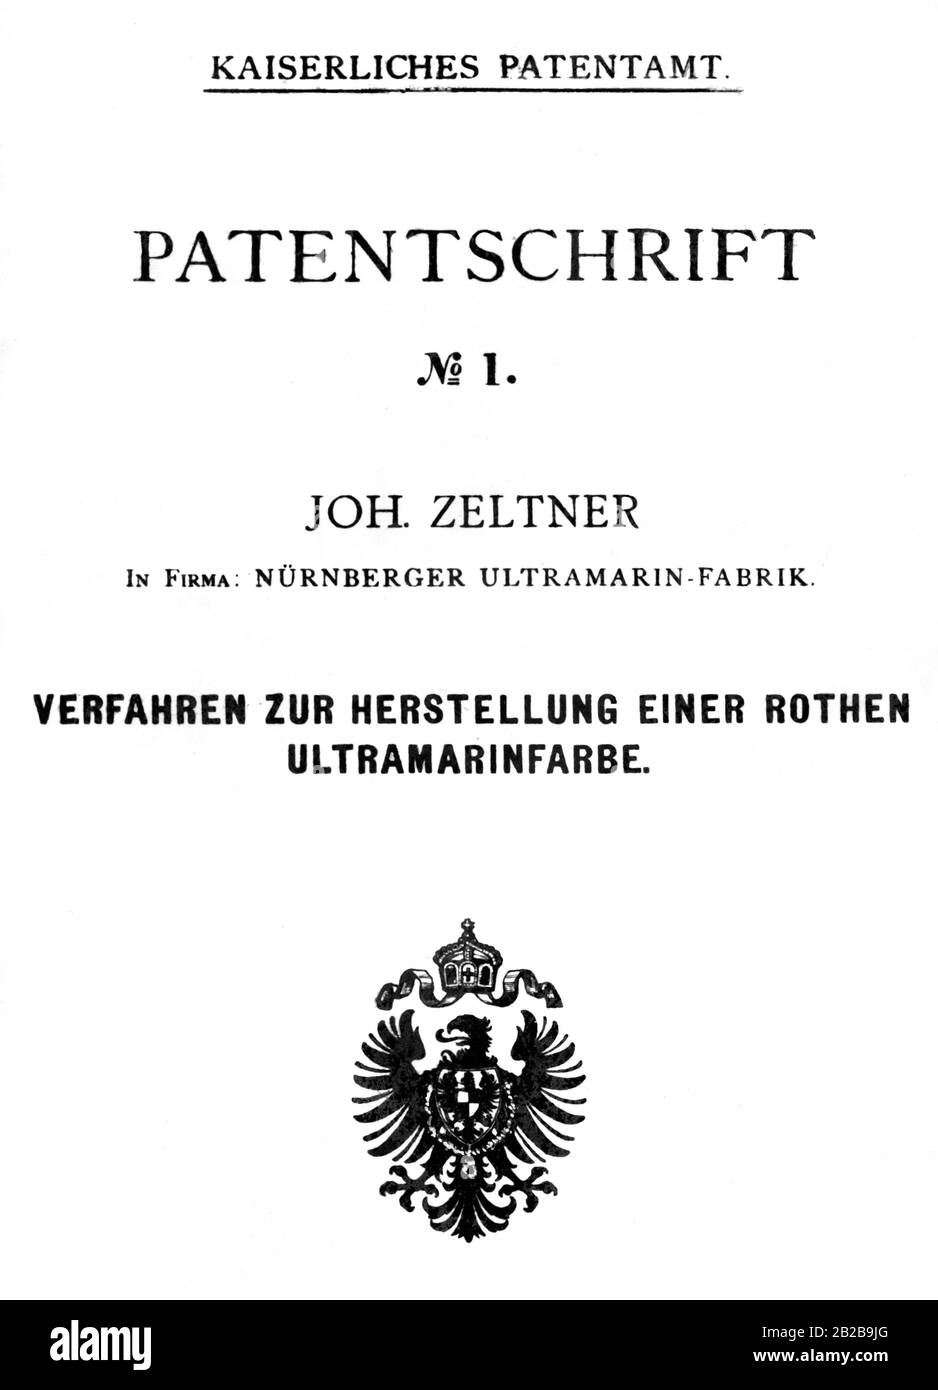 Kopie der Patentschrift von Johann Zeltner vom Kaiserlichen Patentamt für die Herstellung einer roten Ultramarinfarbe für die Ultramarinenfabrik Nürnberg. Es ist das erste Patentdokument, das vom Patentamt auf der Grundlage des am 01.07.1877 in Kraft getretenen Kaiserlichen Patentgesetzes ausgestellt wurde. Stockfoto